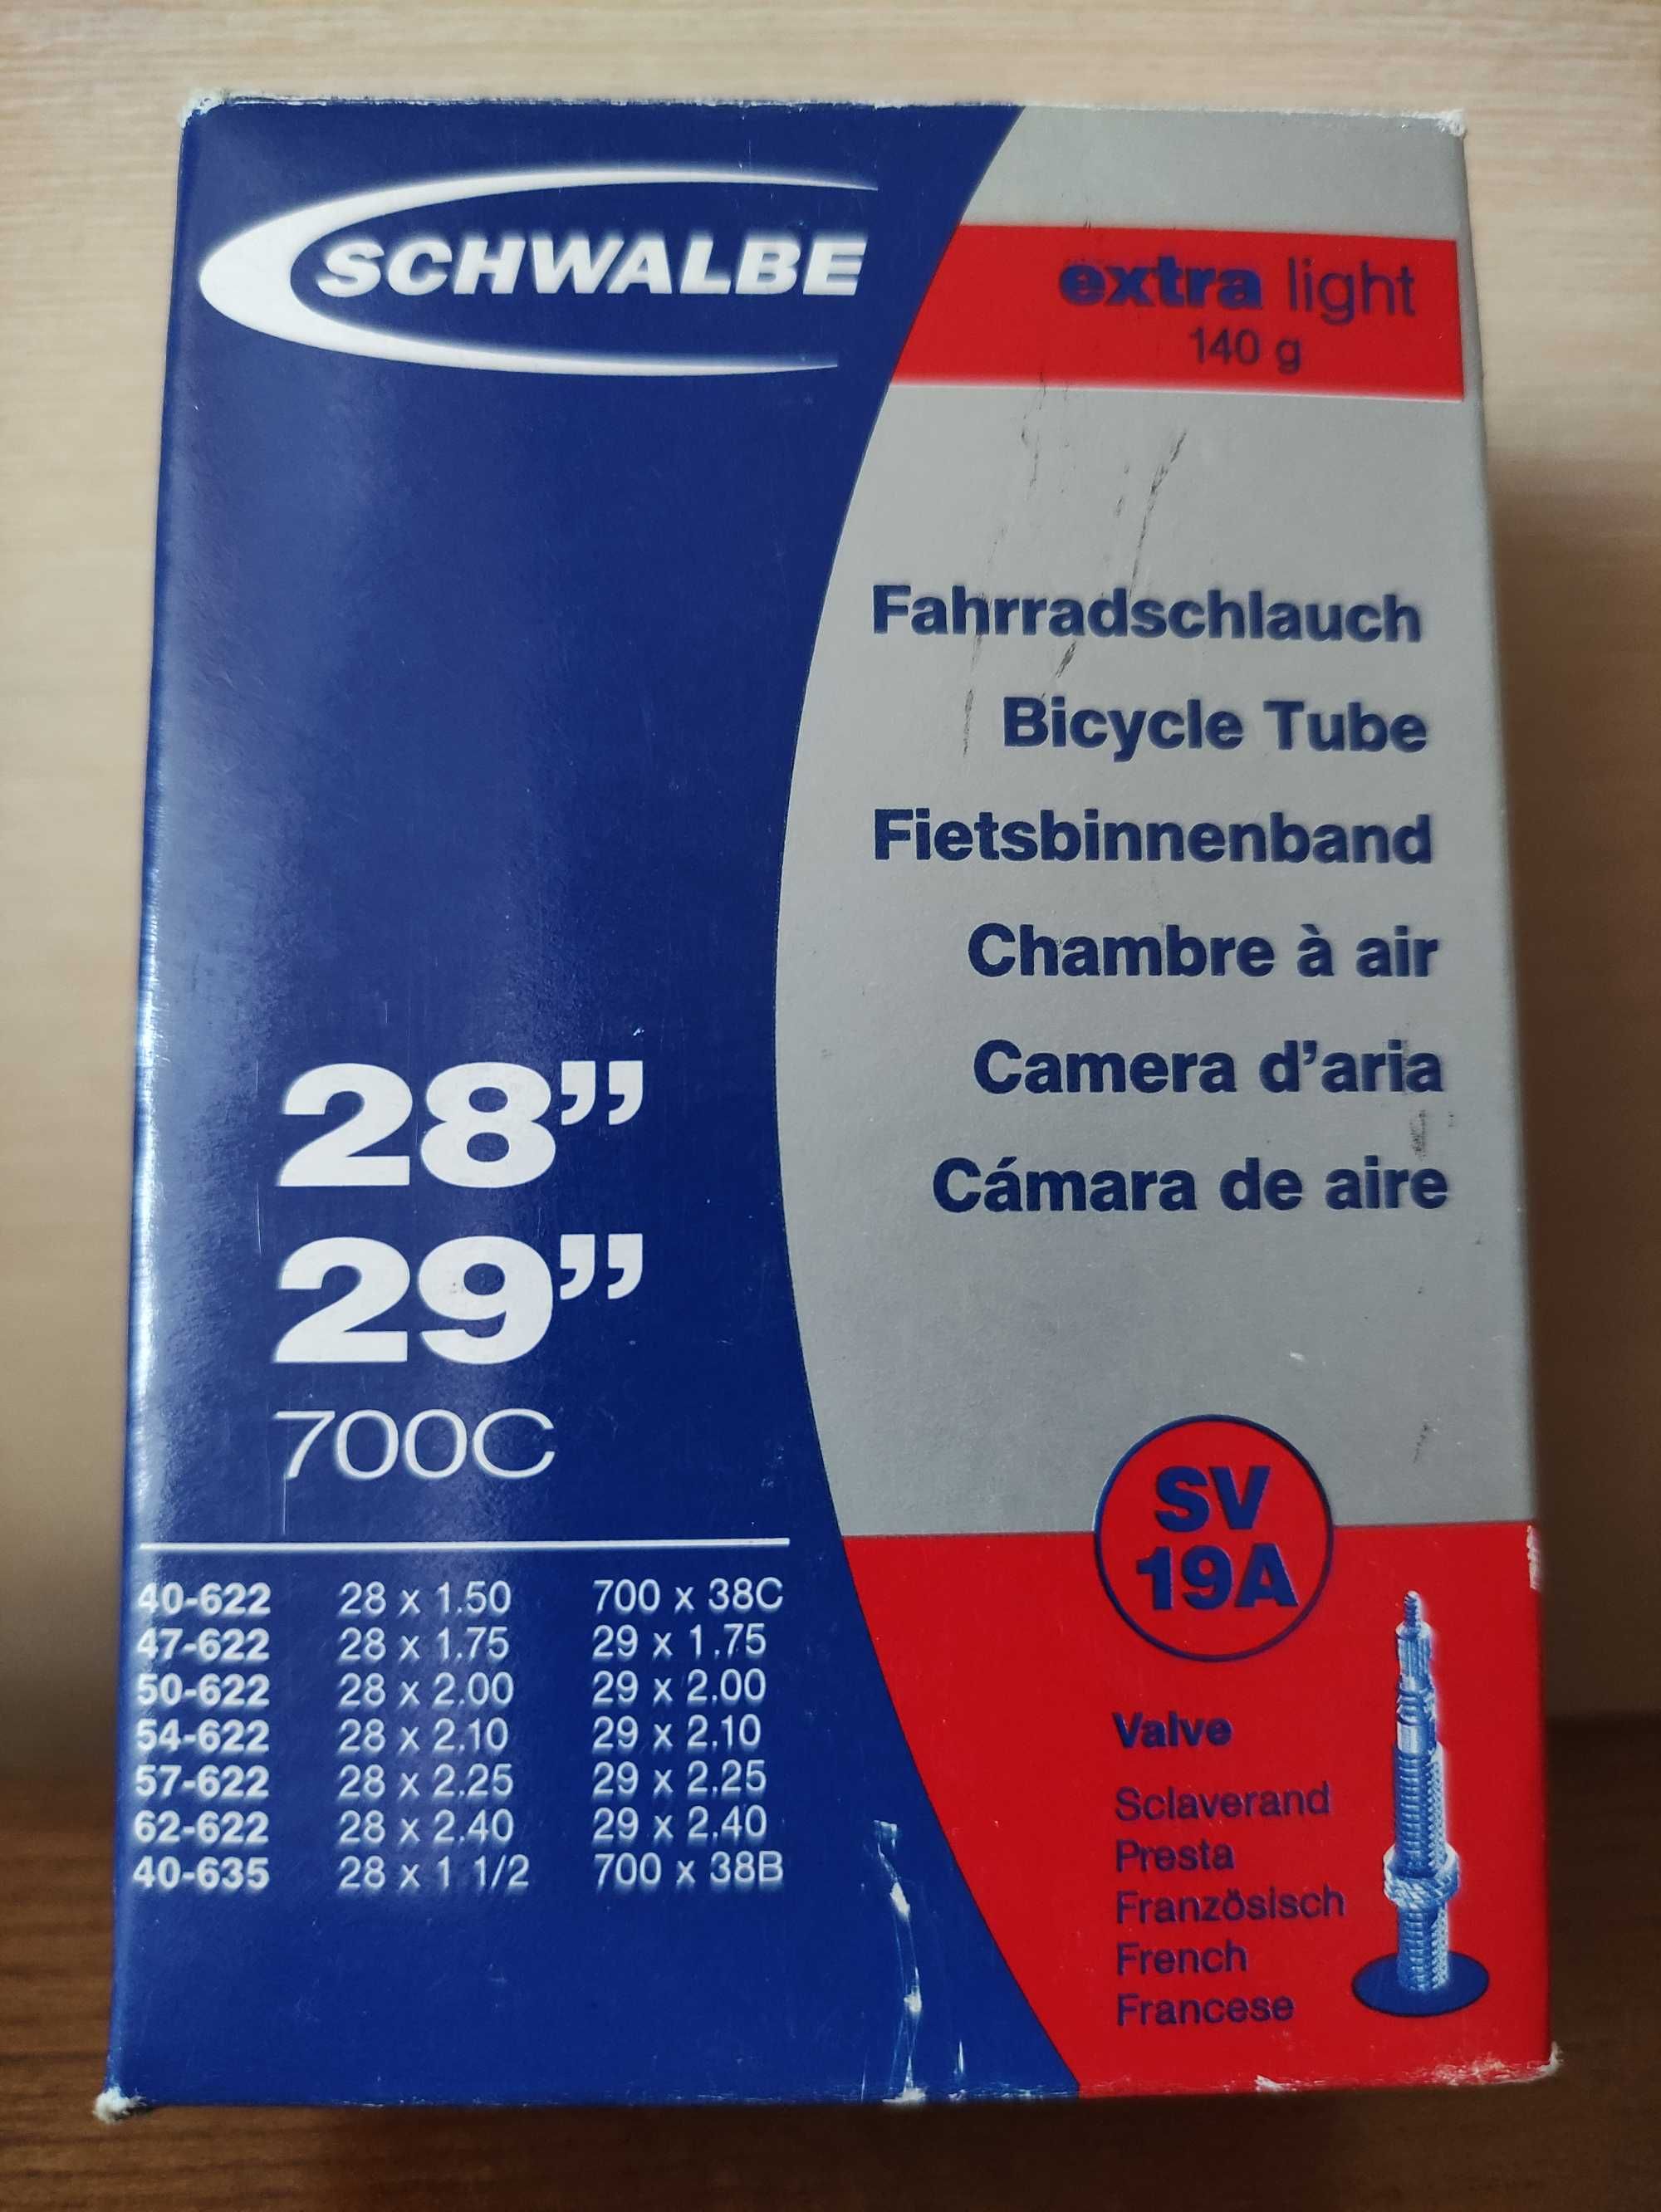 Камера Schwalbe Presta SV 19A Extralight